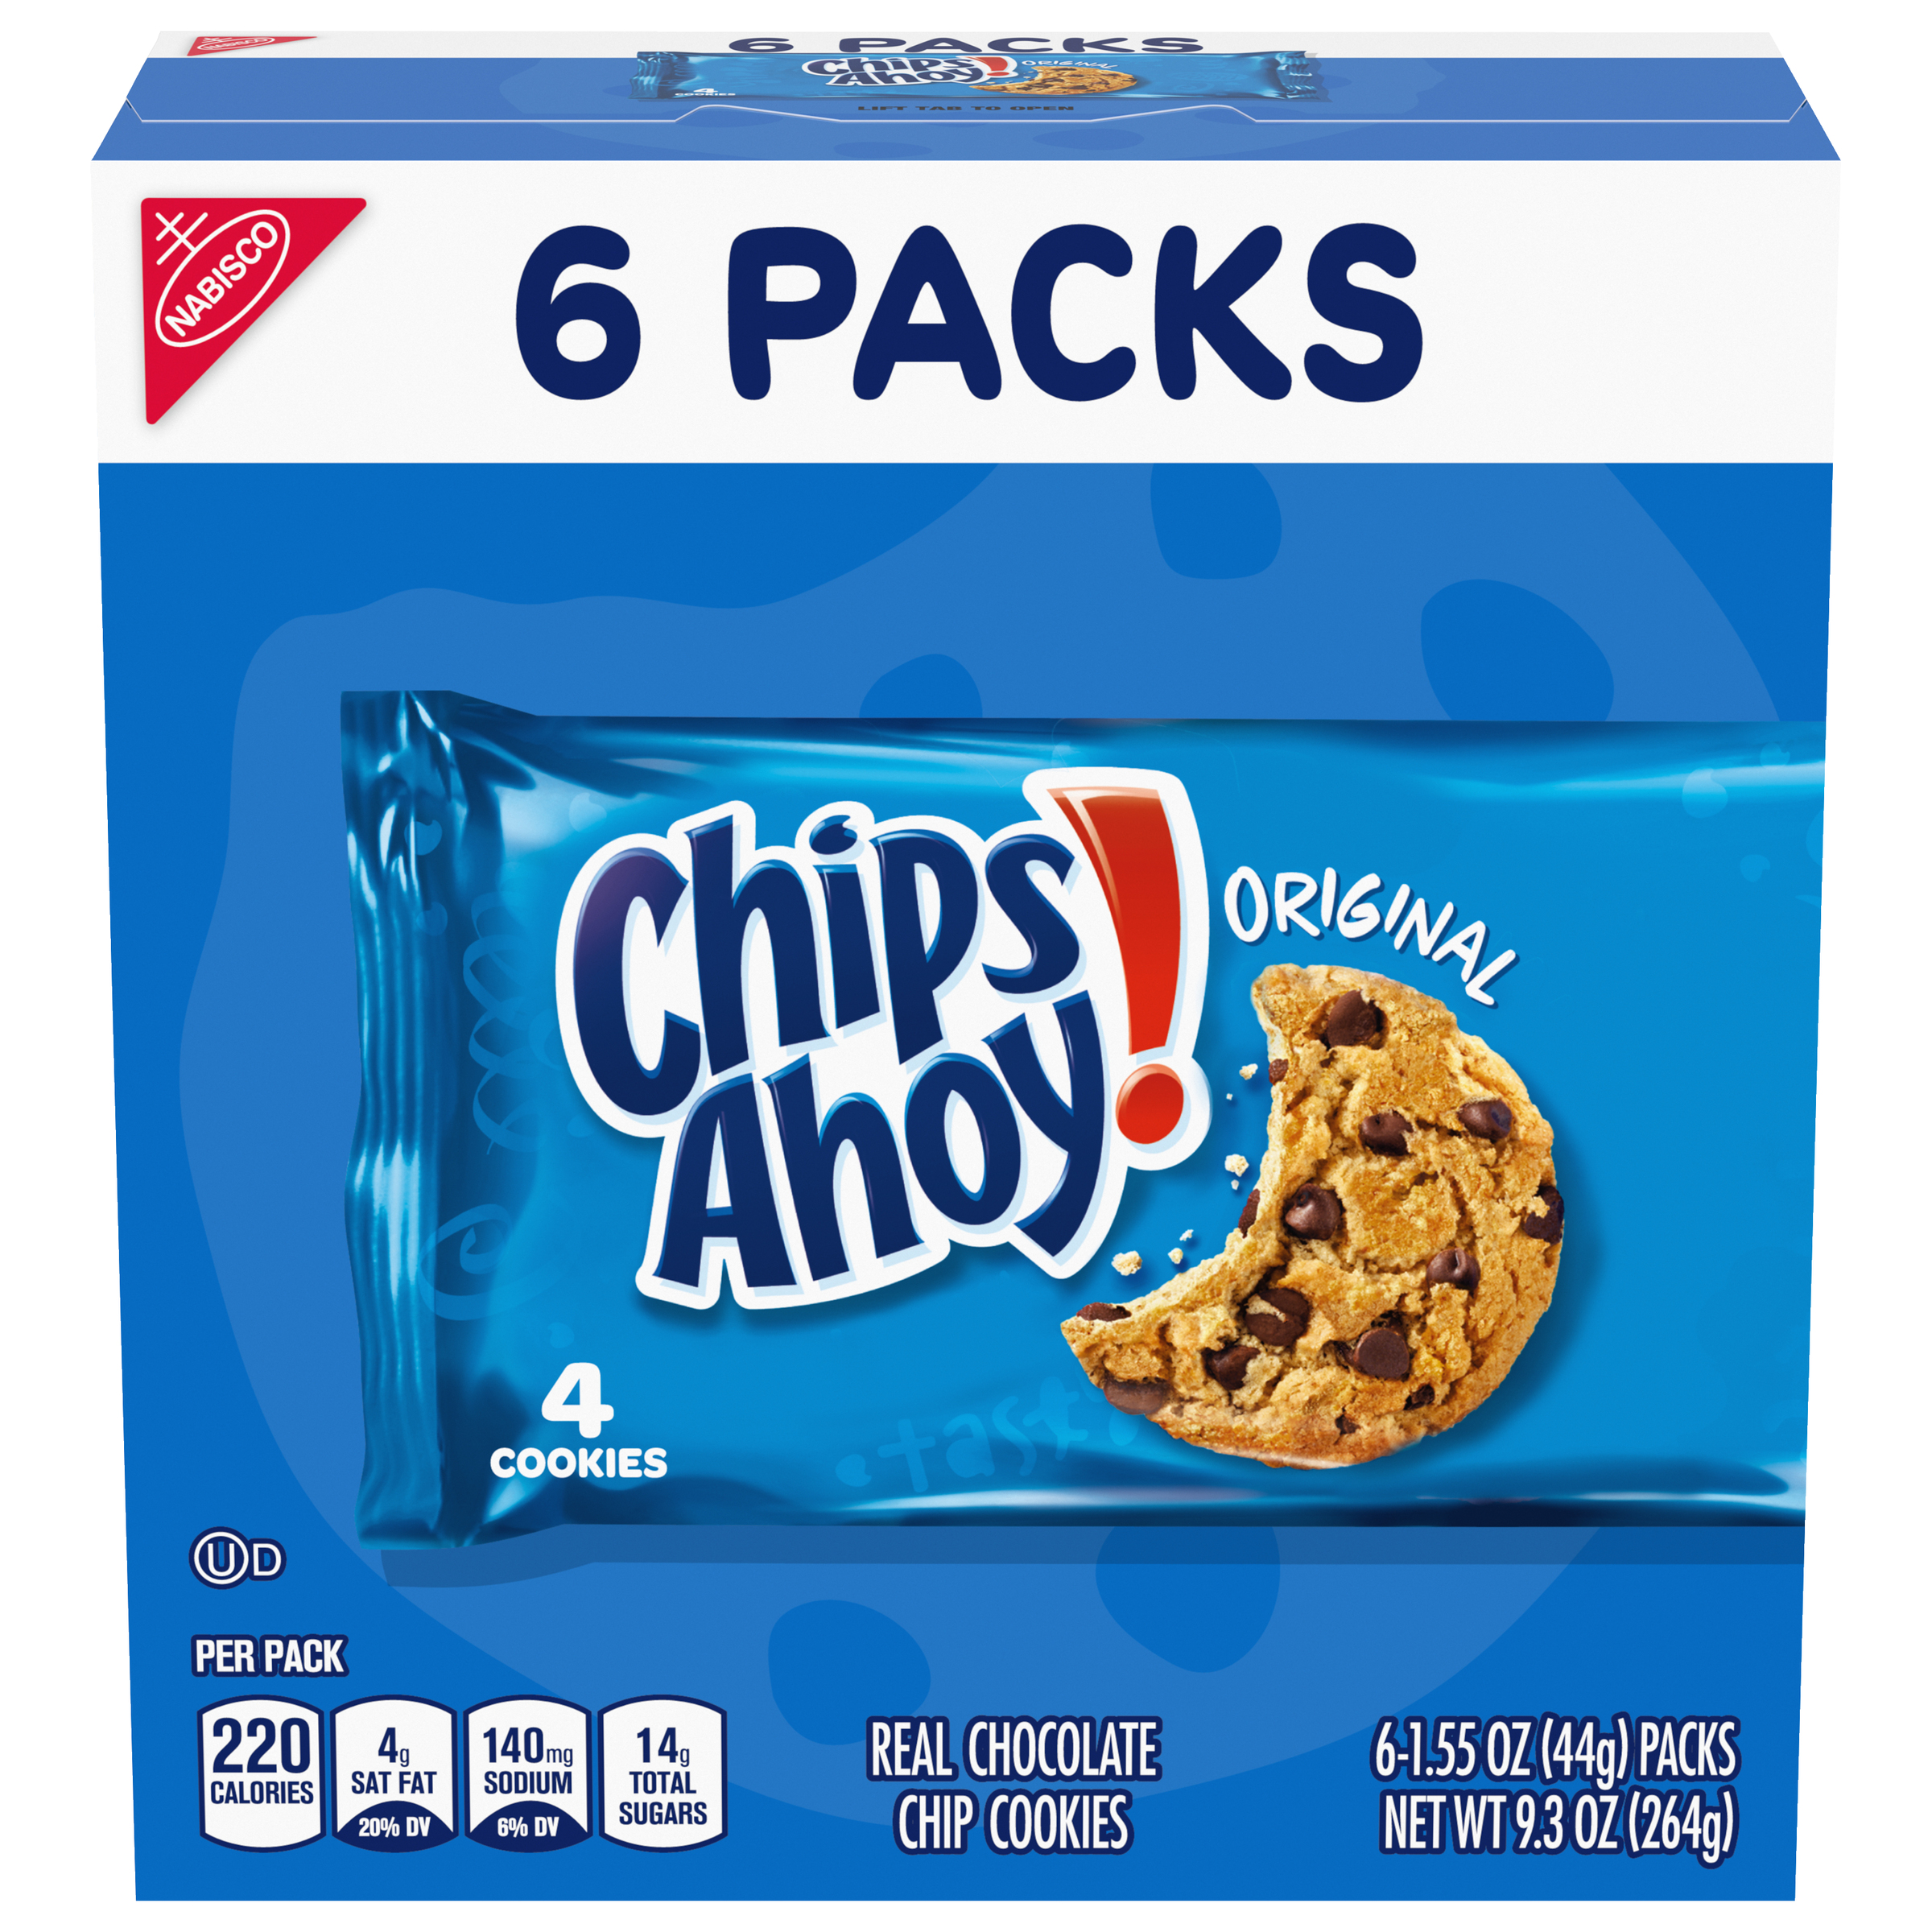 CHIPS AHOY! Original Chocolate Chip Cookies, 6 Total Snack Packs (4 Cookies Per Pack)